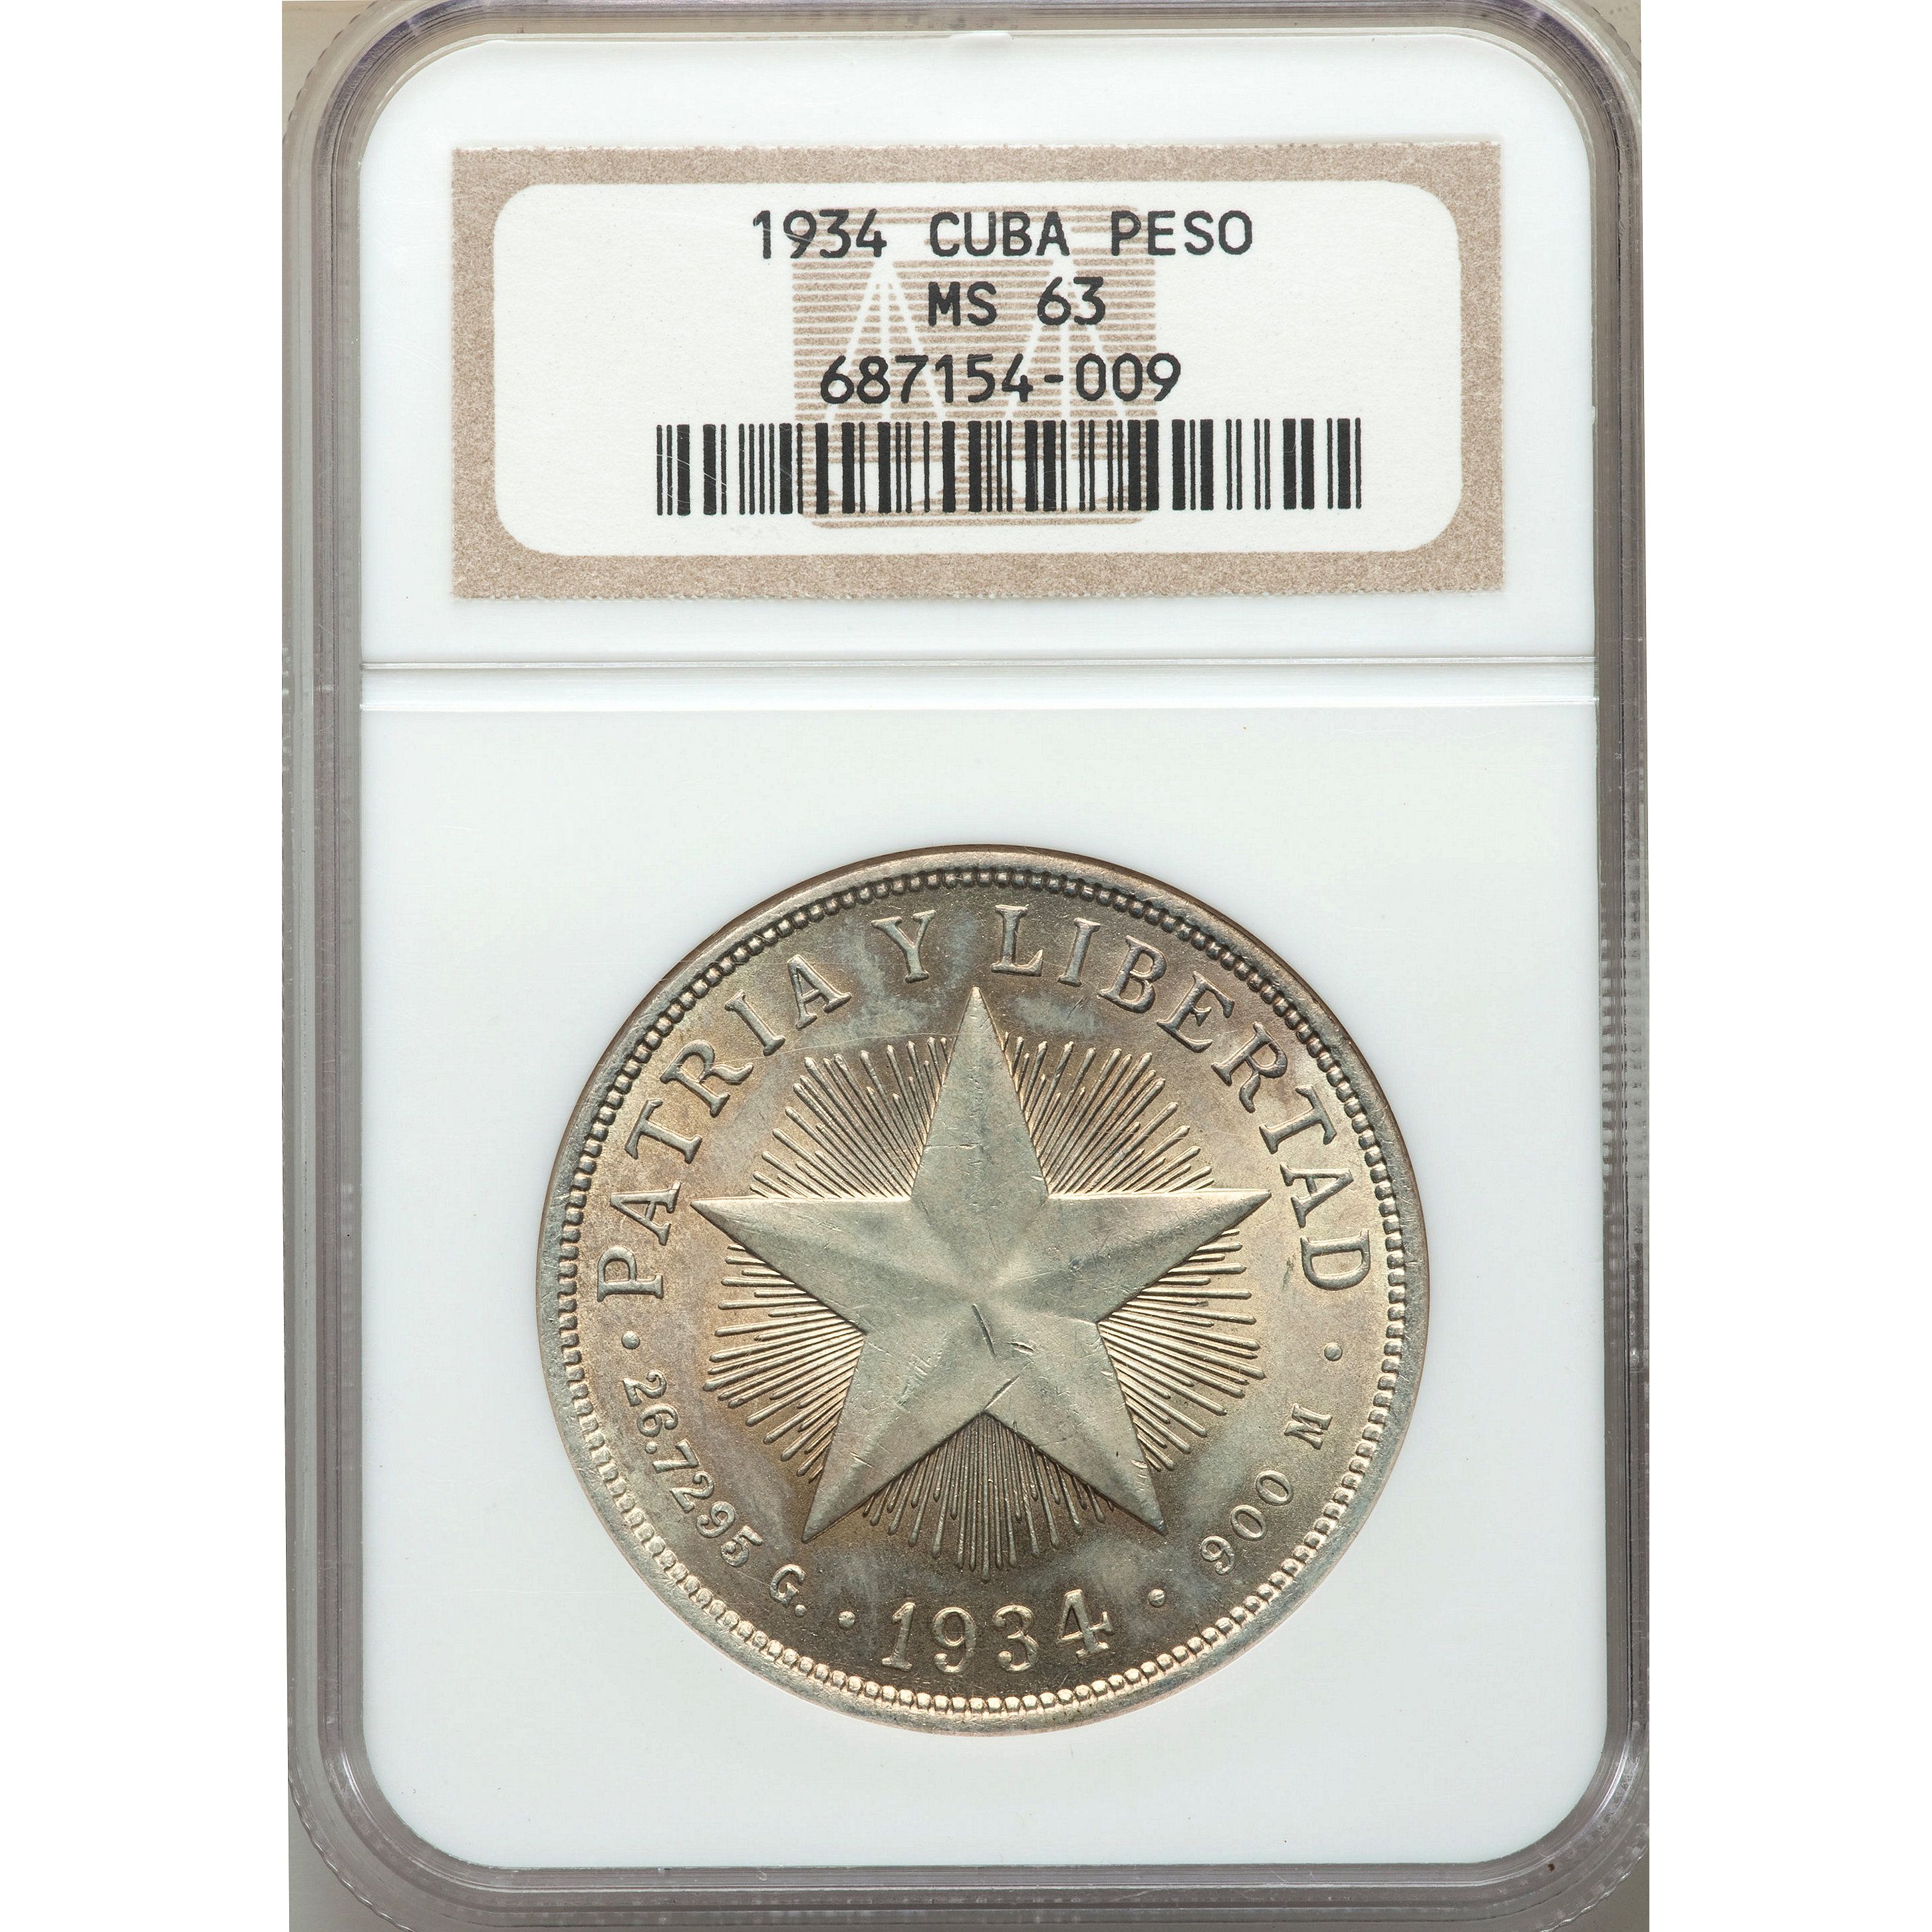 1934 peso cuba coins cuban silver ms63 rare coin